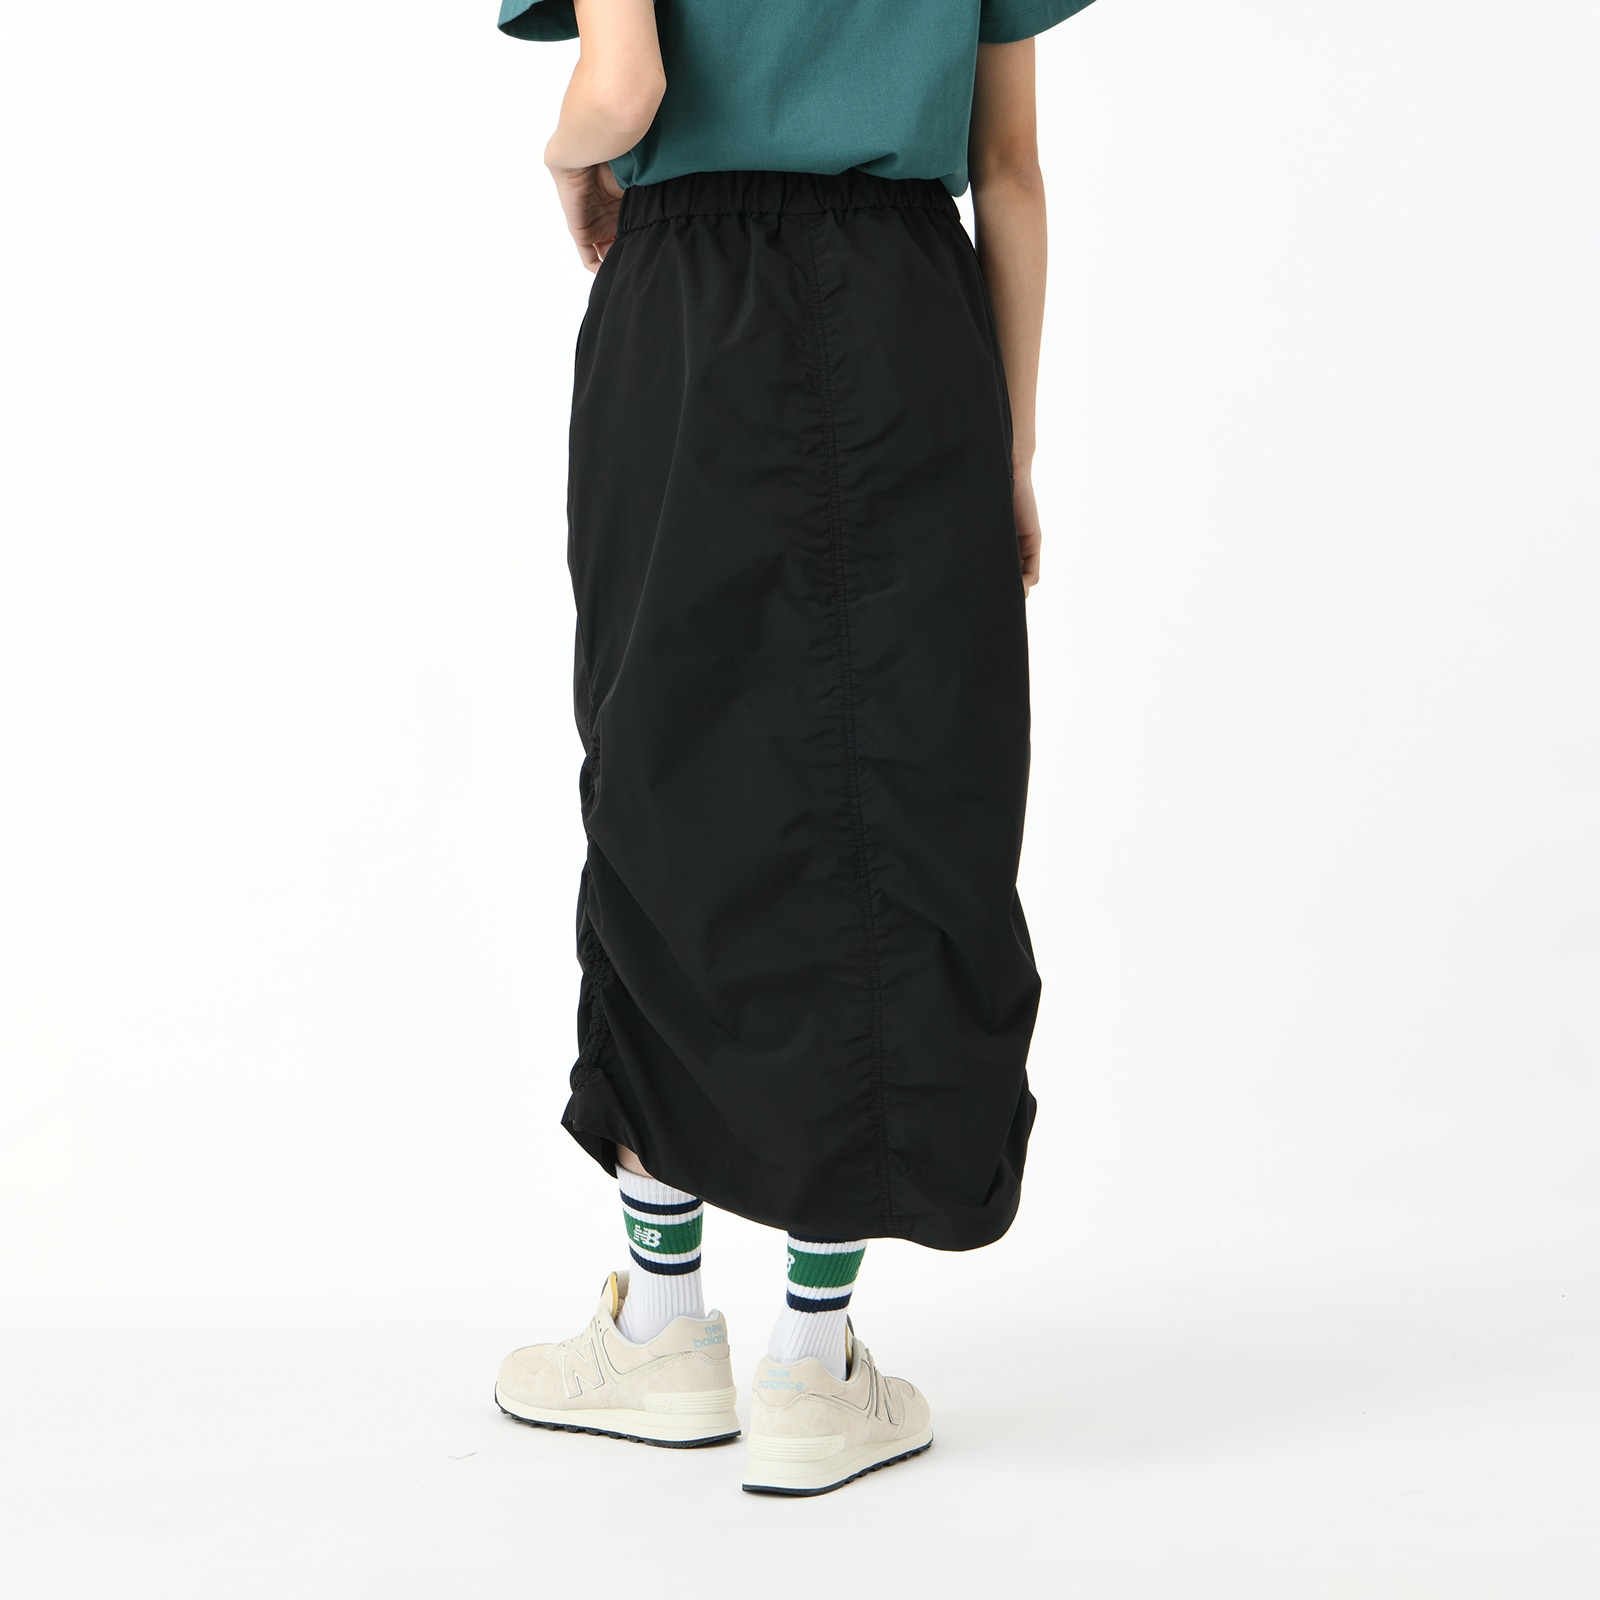 Woven skirt